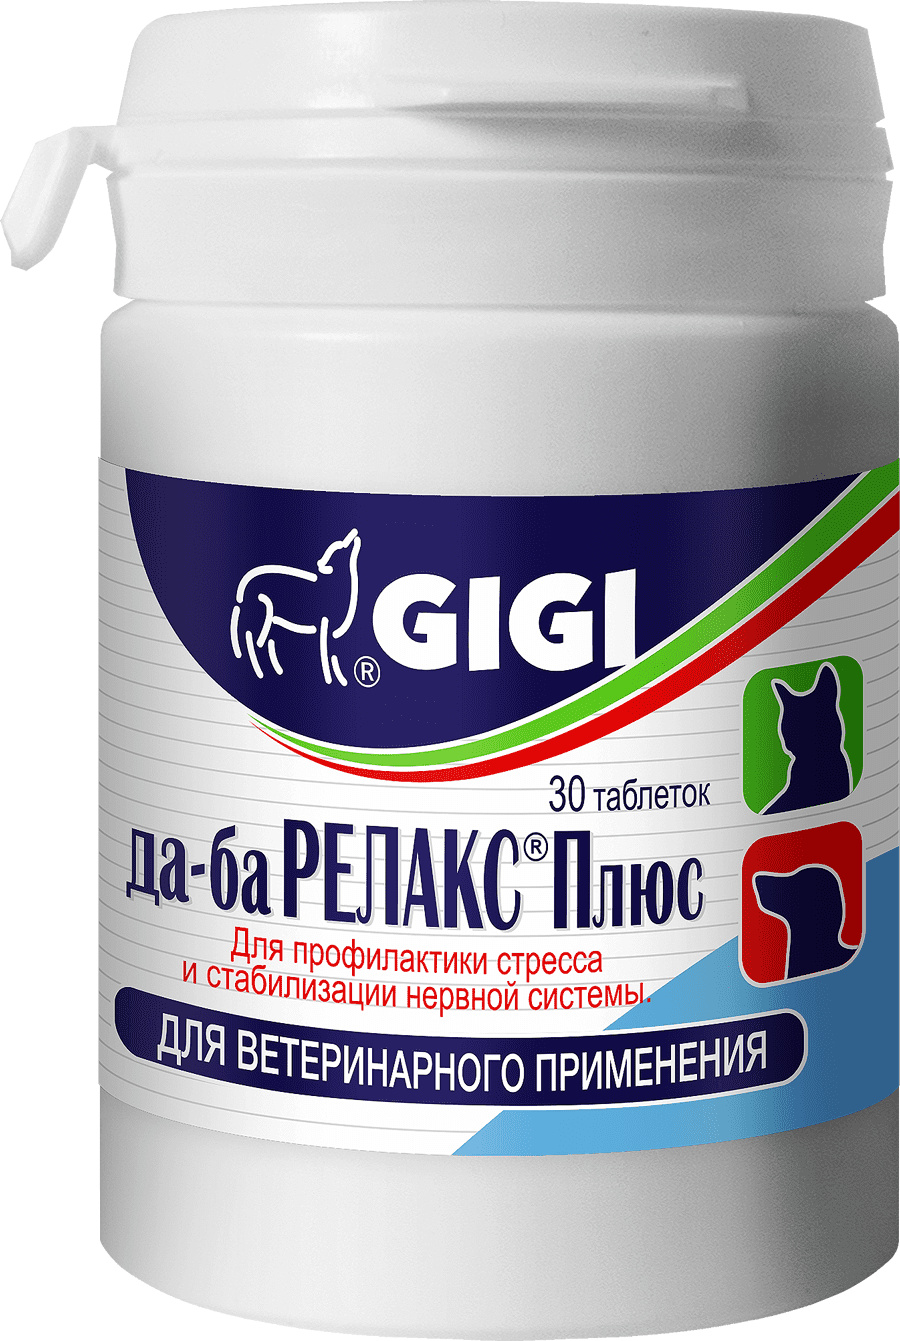 GIGI GIGI да-ба Релакс Плюс №30 для профилактики стресса и стабилизации нервной системы,30 таблеток (62 г) gigi gigi активет 90 1 таблетка 10кг 376 г